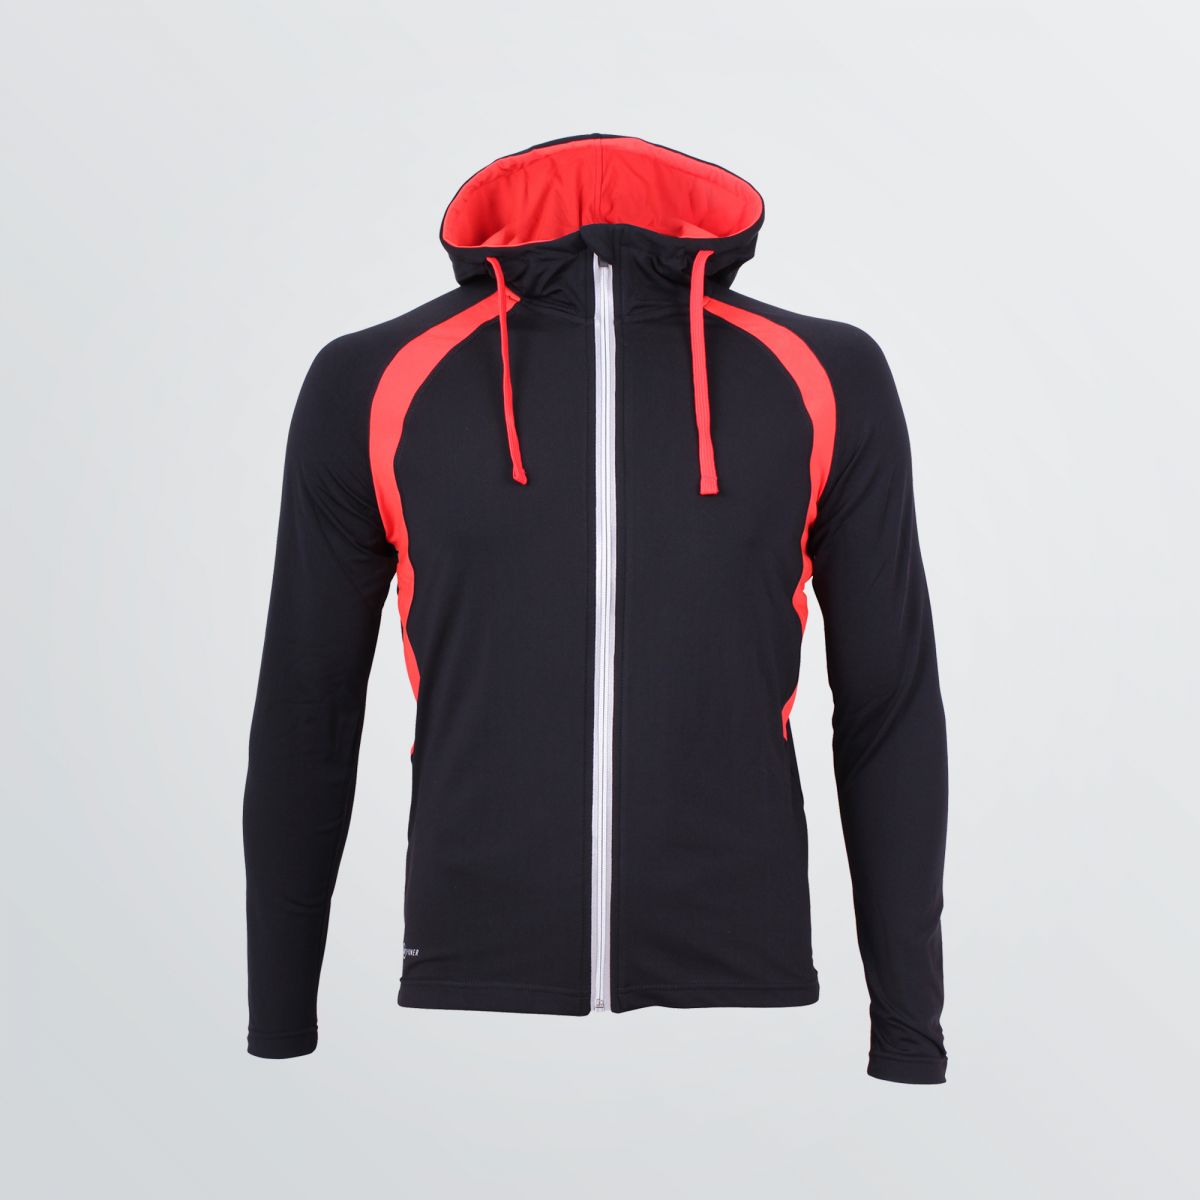 Leichtes Thermo Jacket zum Individualisieren als Produktbeispiel in schwarz mit roten Kordeln und Schultereinsätzen  - Frontansicht